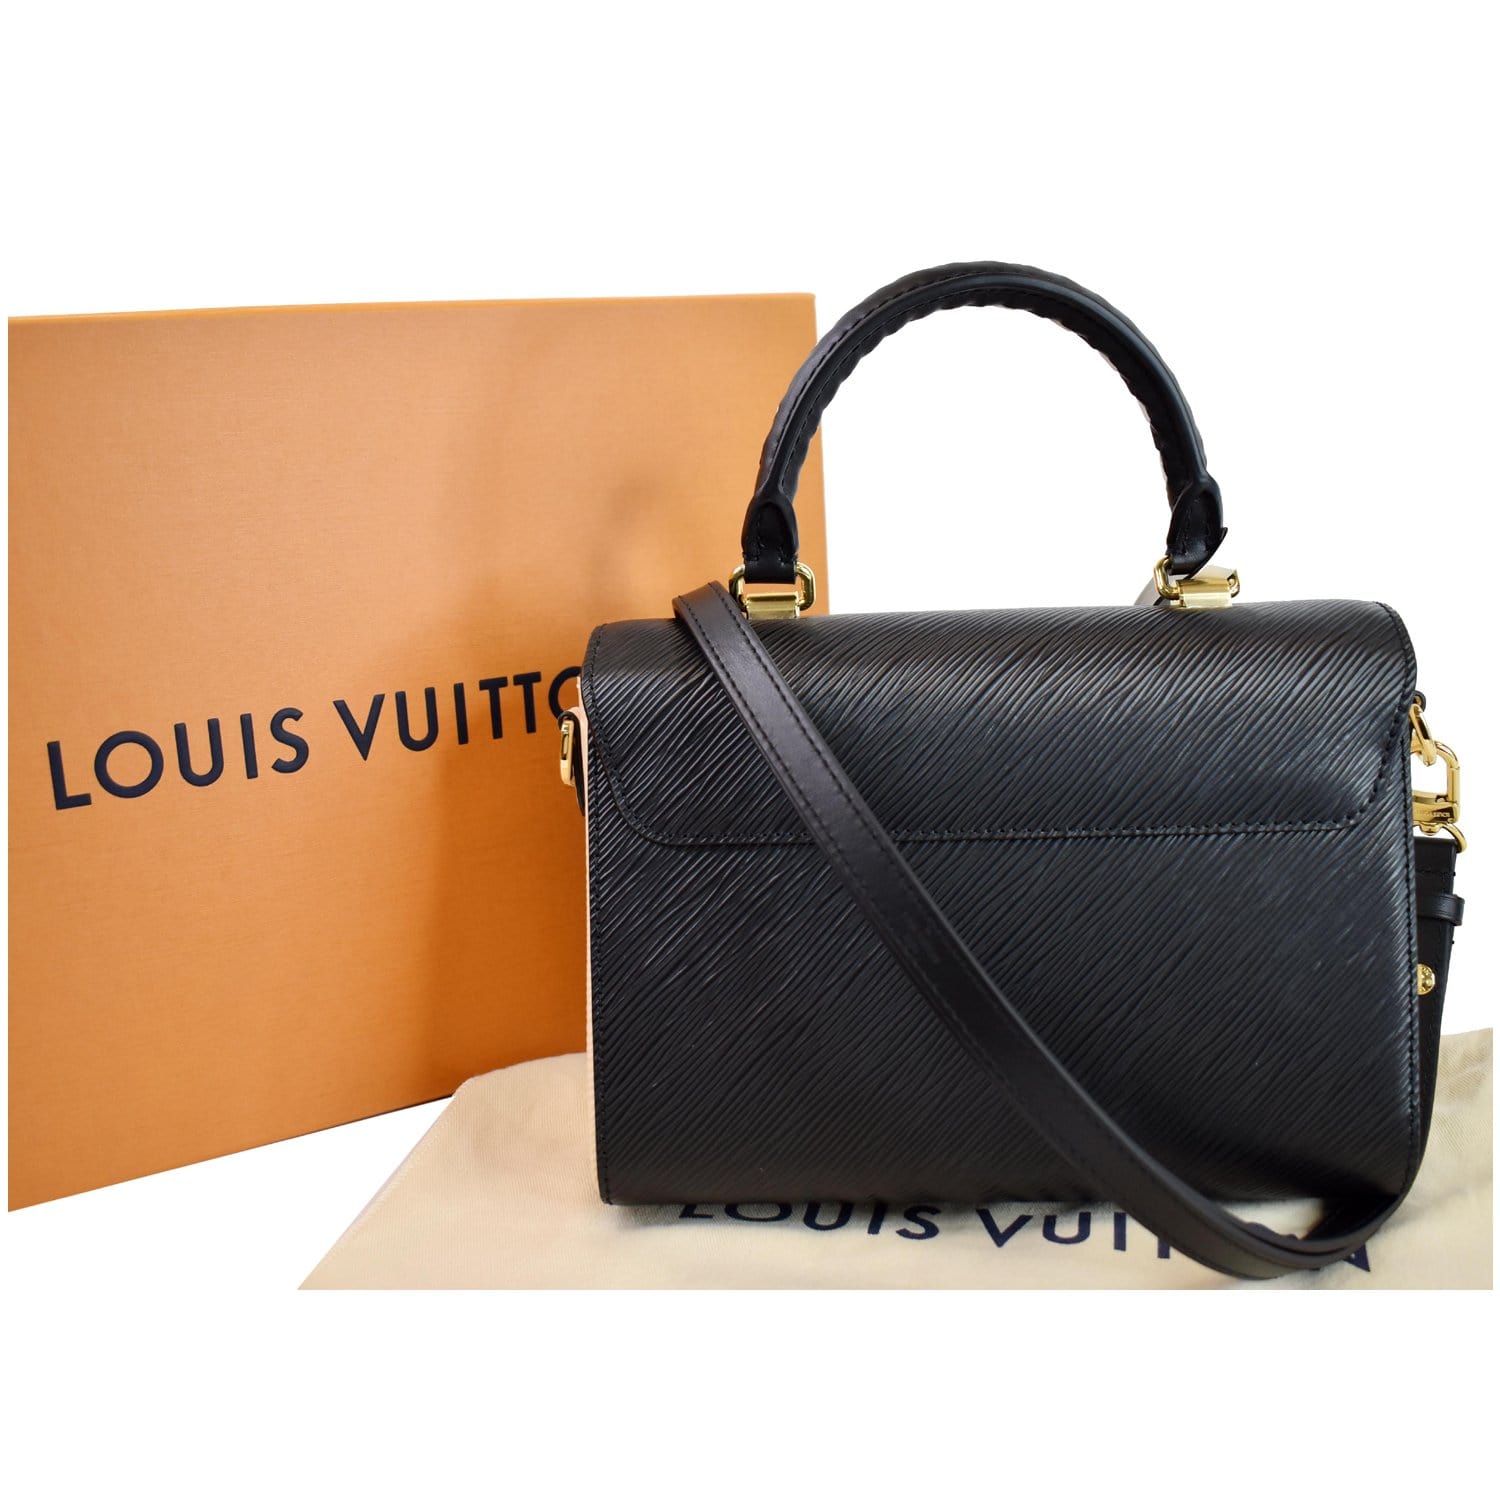 Louis Vuitton Speedy 25 black handles